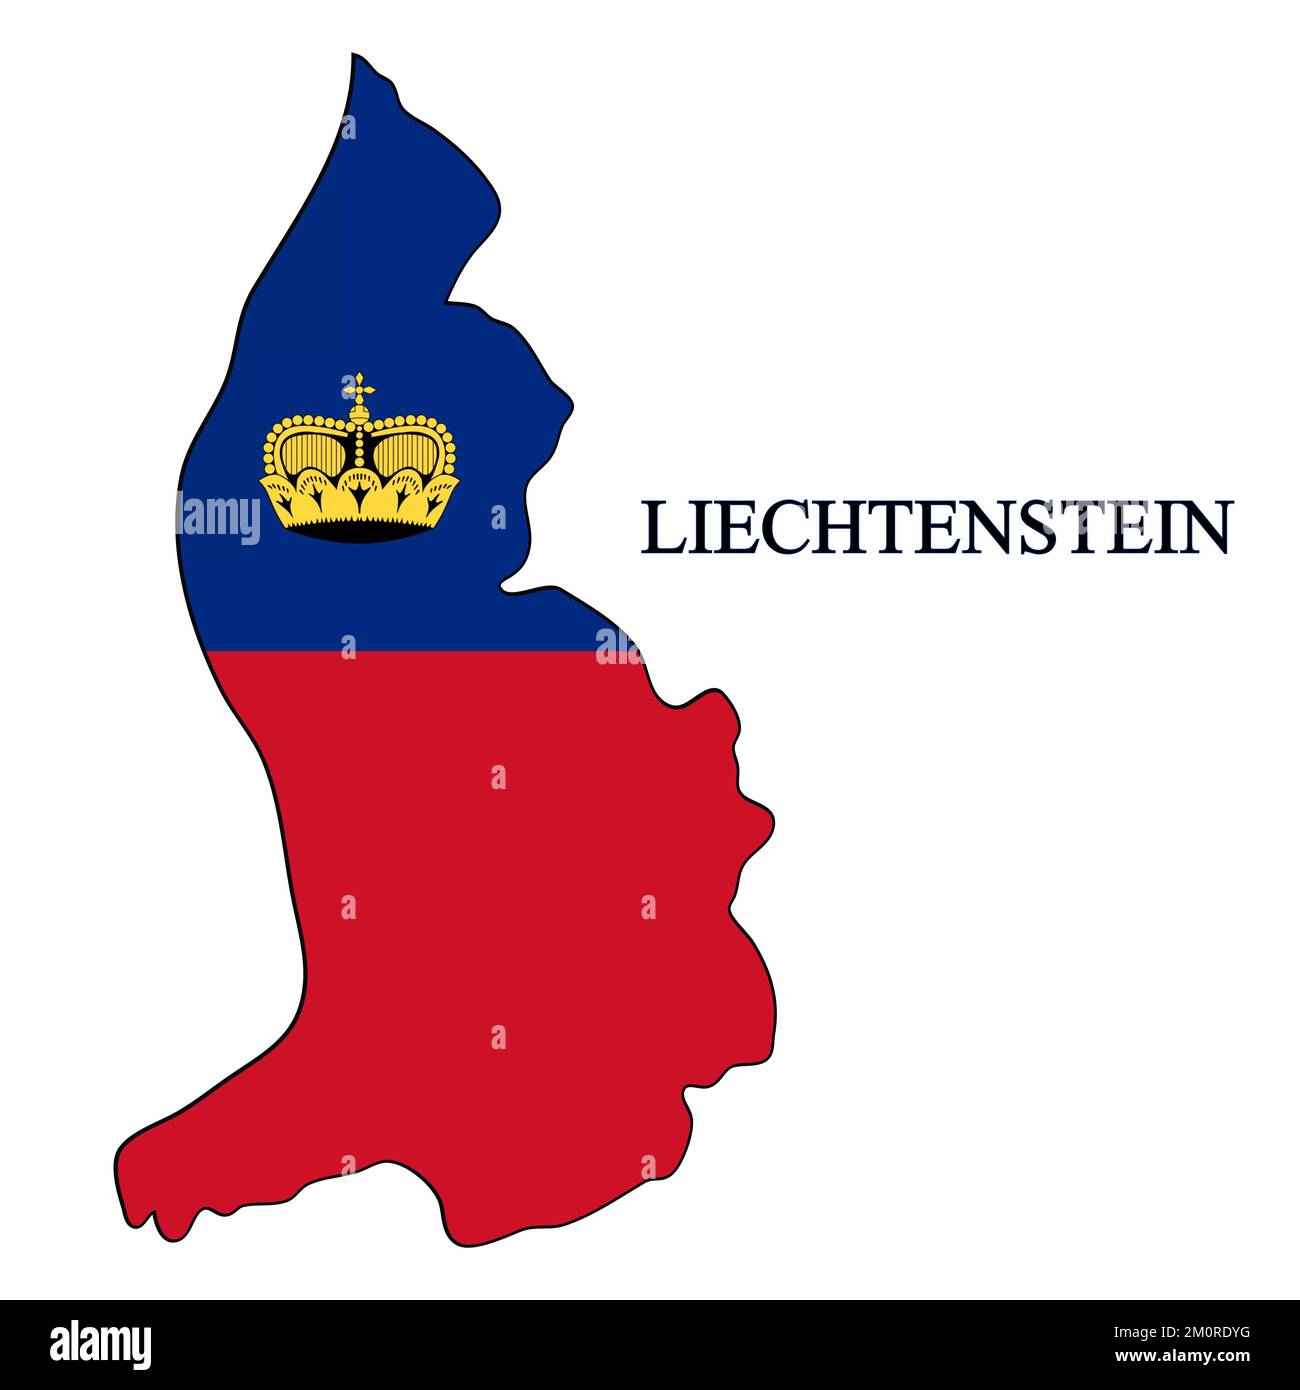 Illustration vectorielle de la carte du Liechtenstein. Économie mondiale. Pays célèbre. Europe de l'Ouest. Europe. Illustration de Vecteur